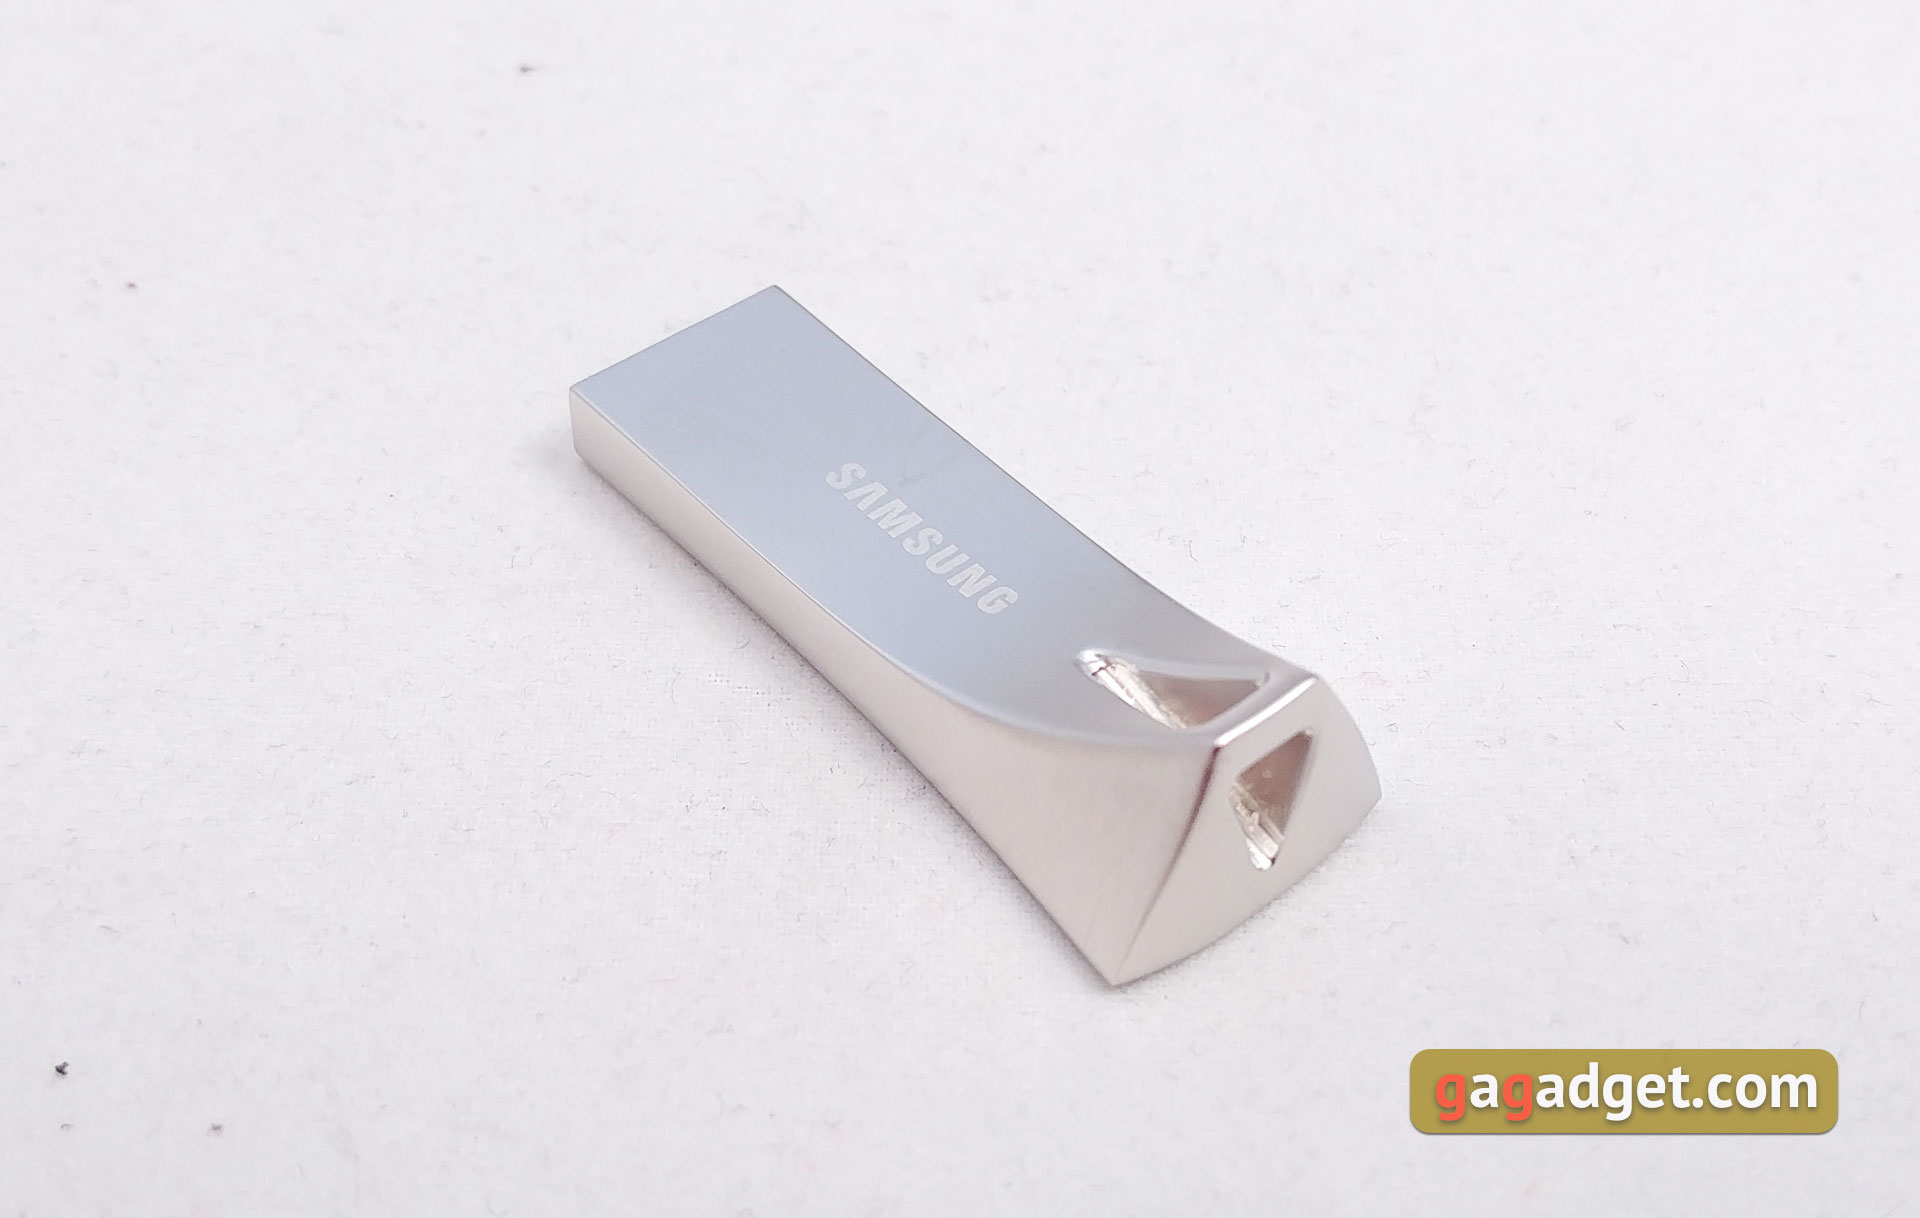 Обзор выносливых MicroSD Samsung PRO Endurance Card и USB-флешки Bar Plus-18